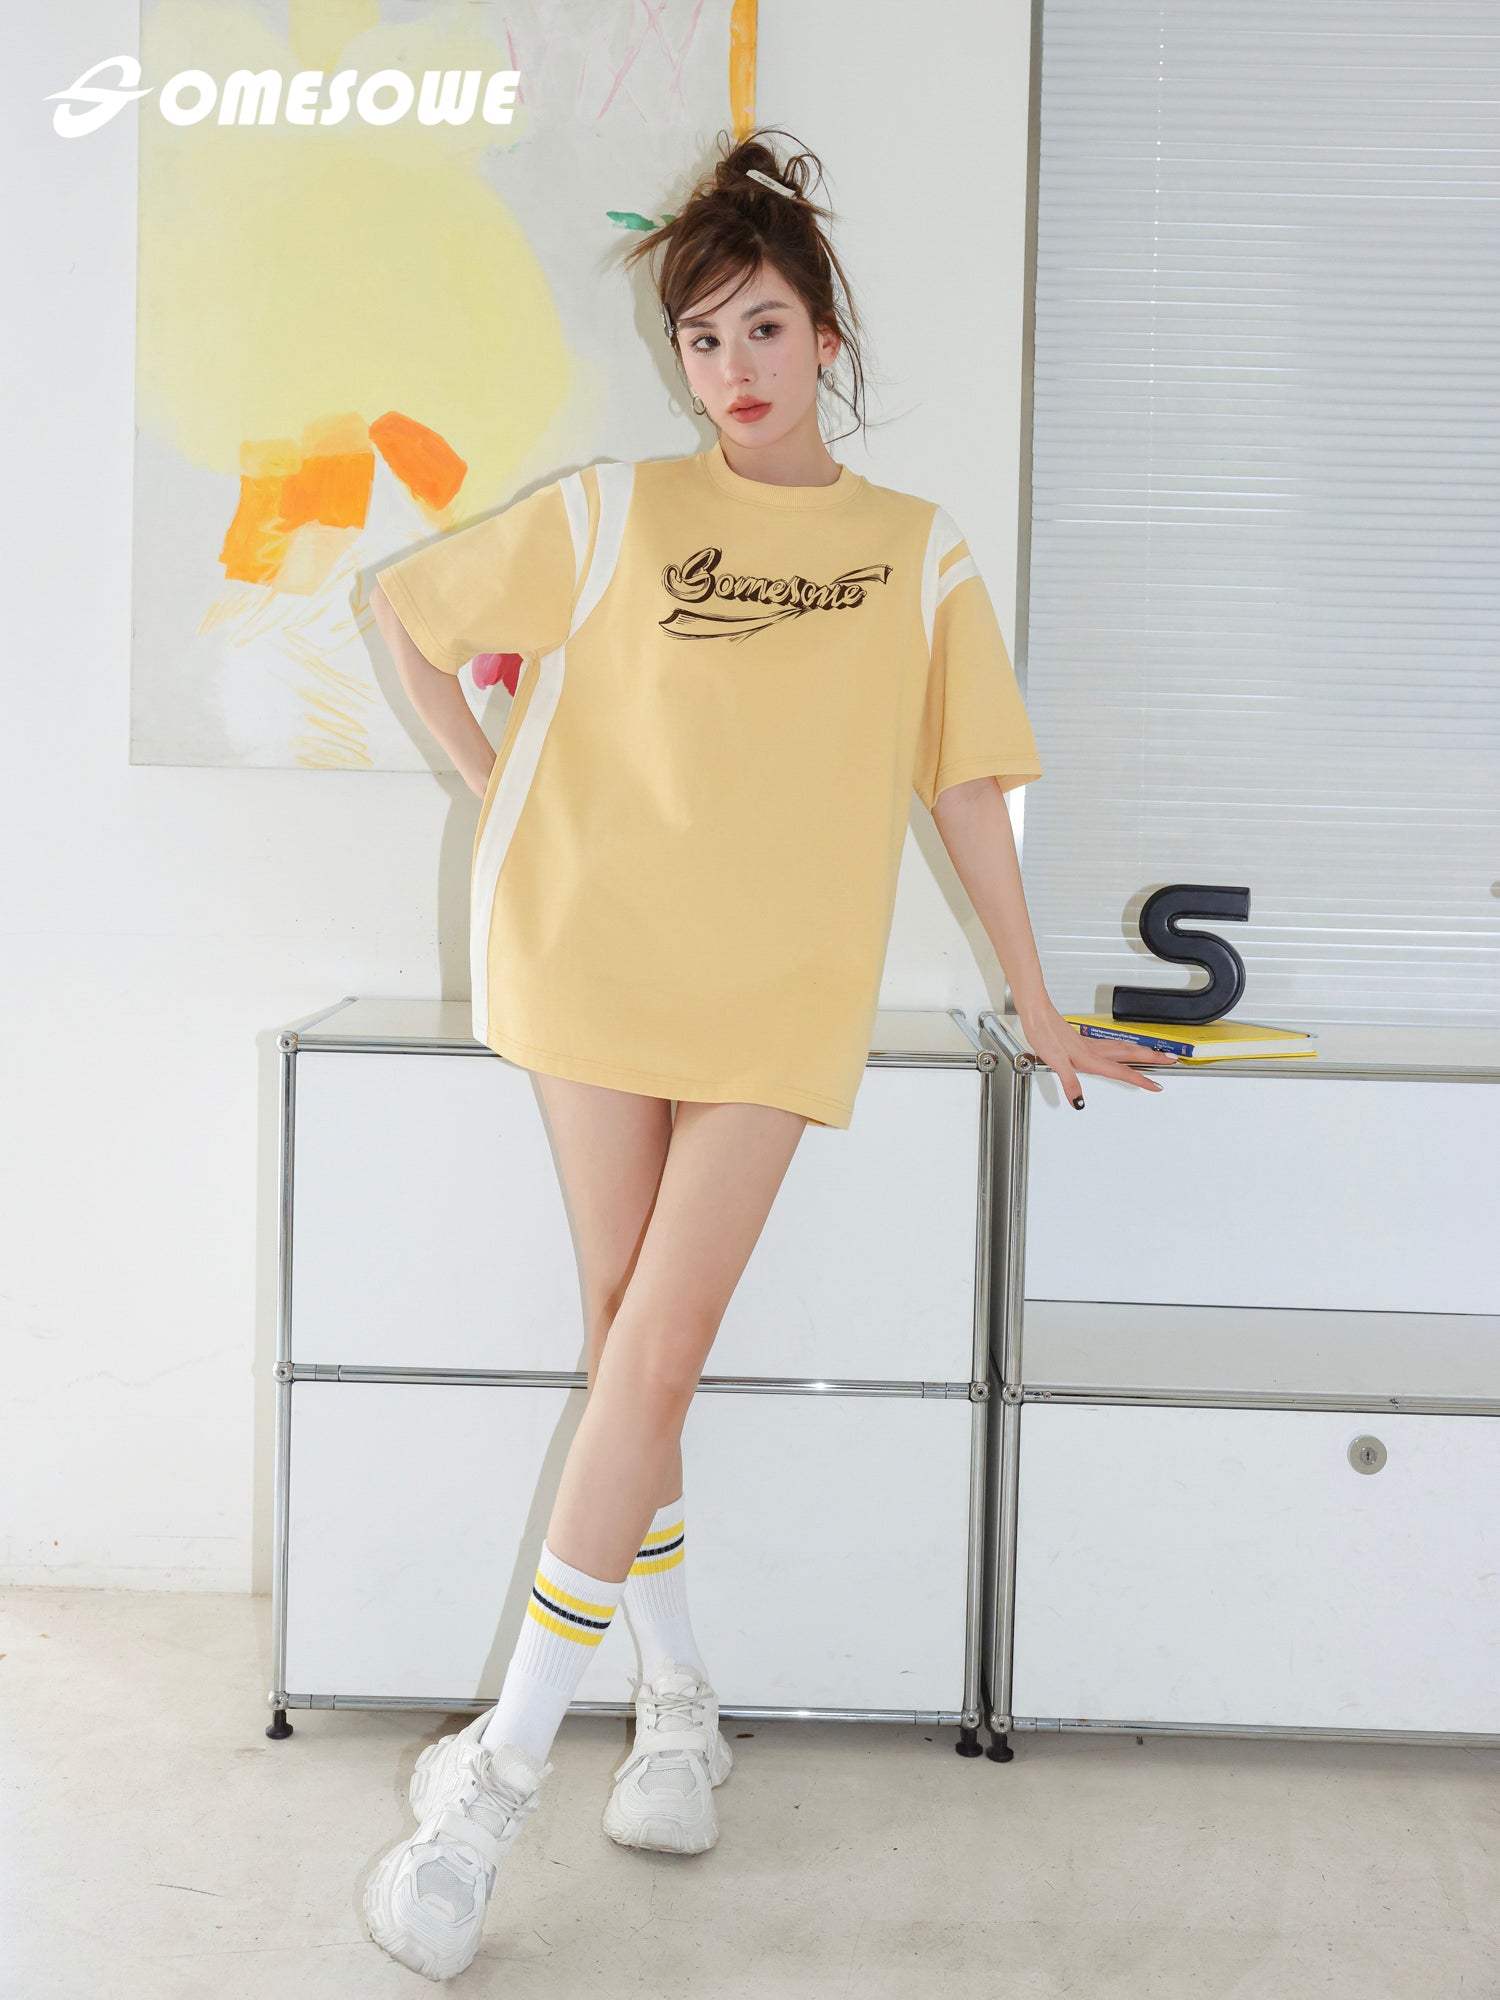 SOMESOWE Yellow And White Logo T-Shirt With Graffiti Prints | MADA IN CHINA